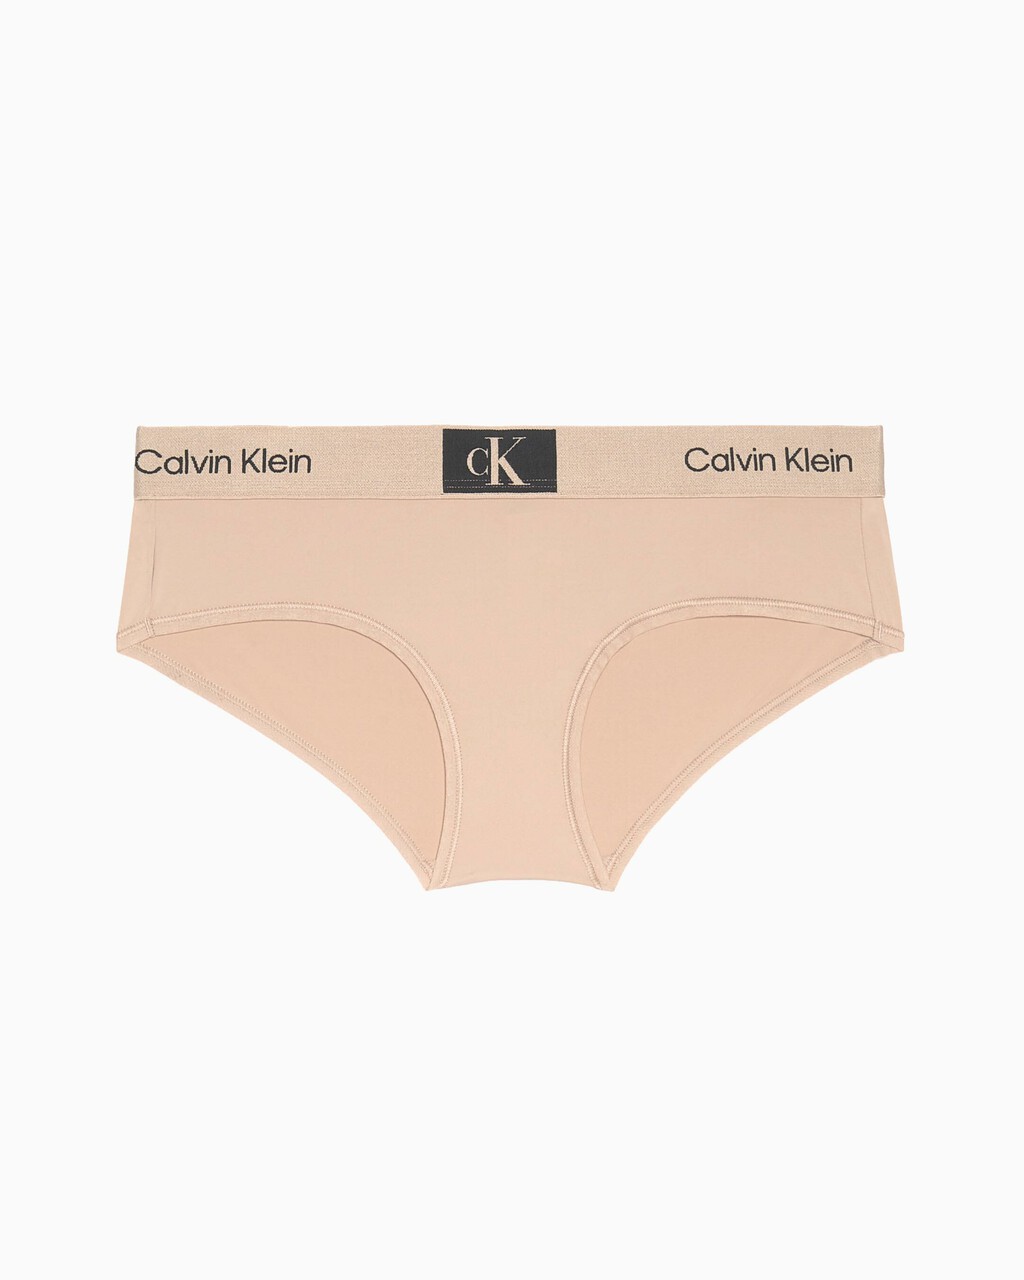 CALVIN KLEIN 1996 低腰內褲, CEDAR, hi-res